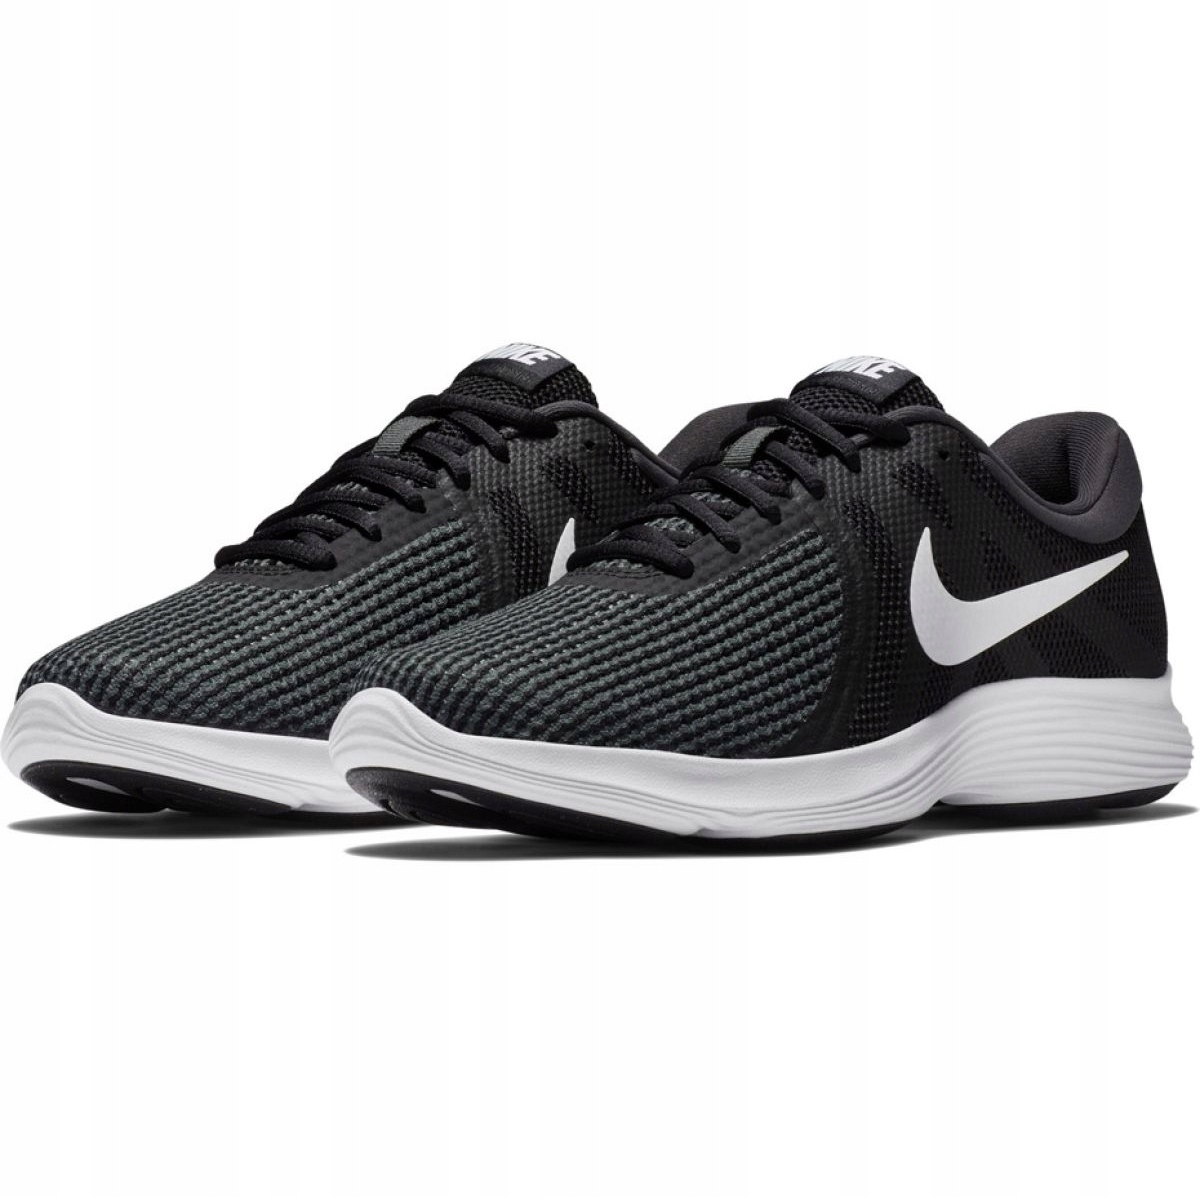 Running shoes Nike Revolution 4 Eu M AJ3490-001 black - KeeShoes